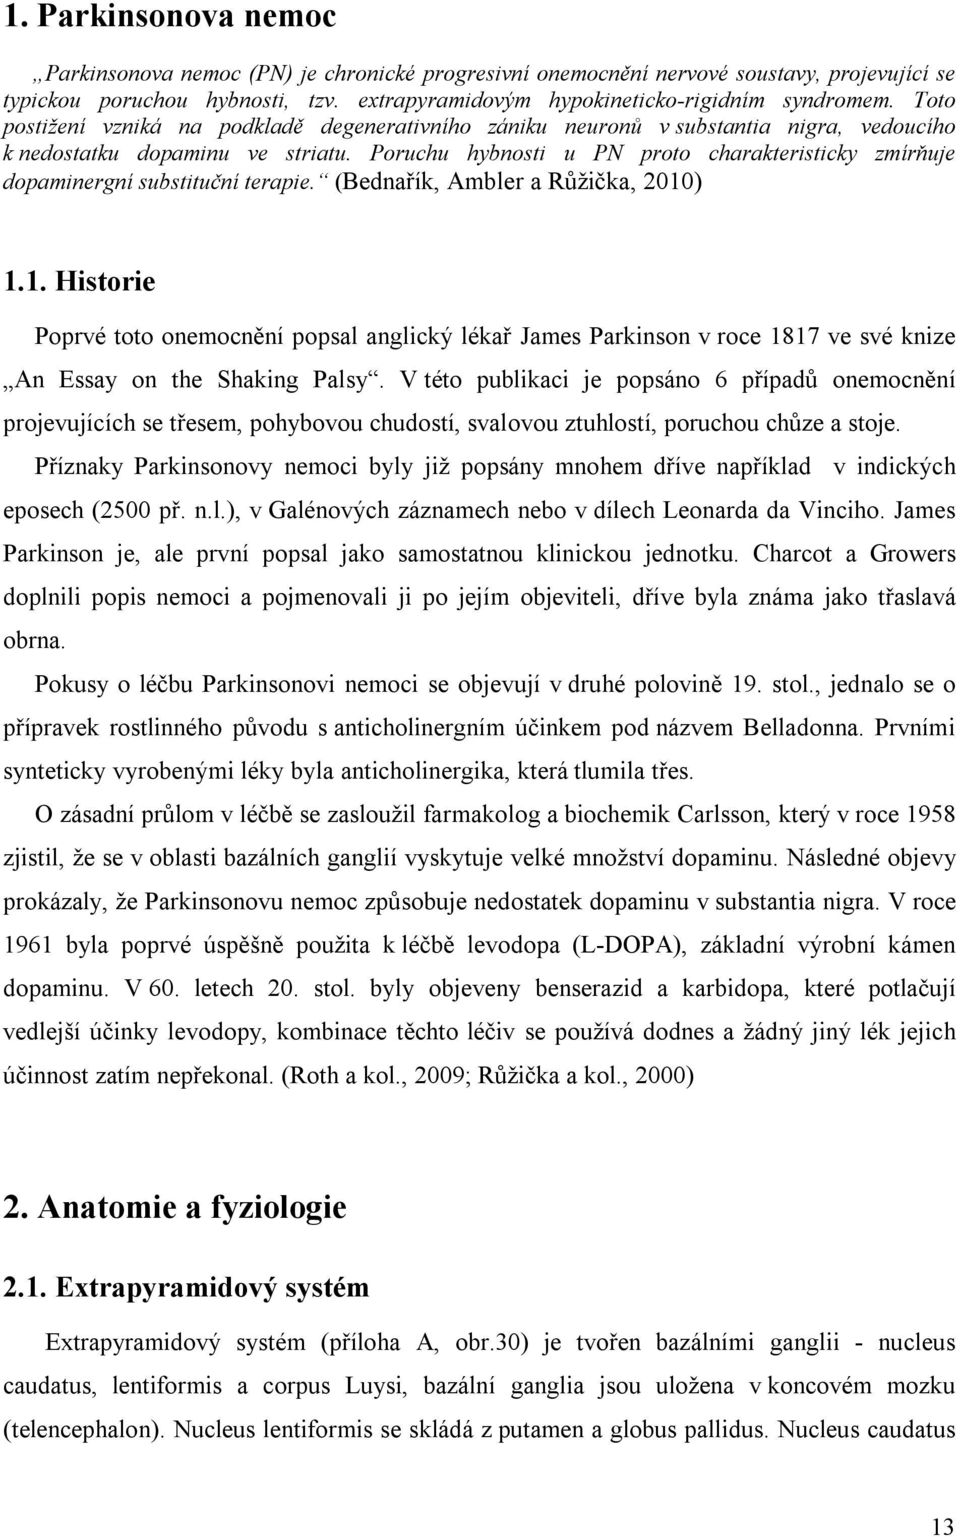 Poruchu hybnosti u PN proto charakteristicky zmírňuje dopaminergní substituční terapie. (Bednařík, Ambler a Růžička, 2010